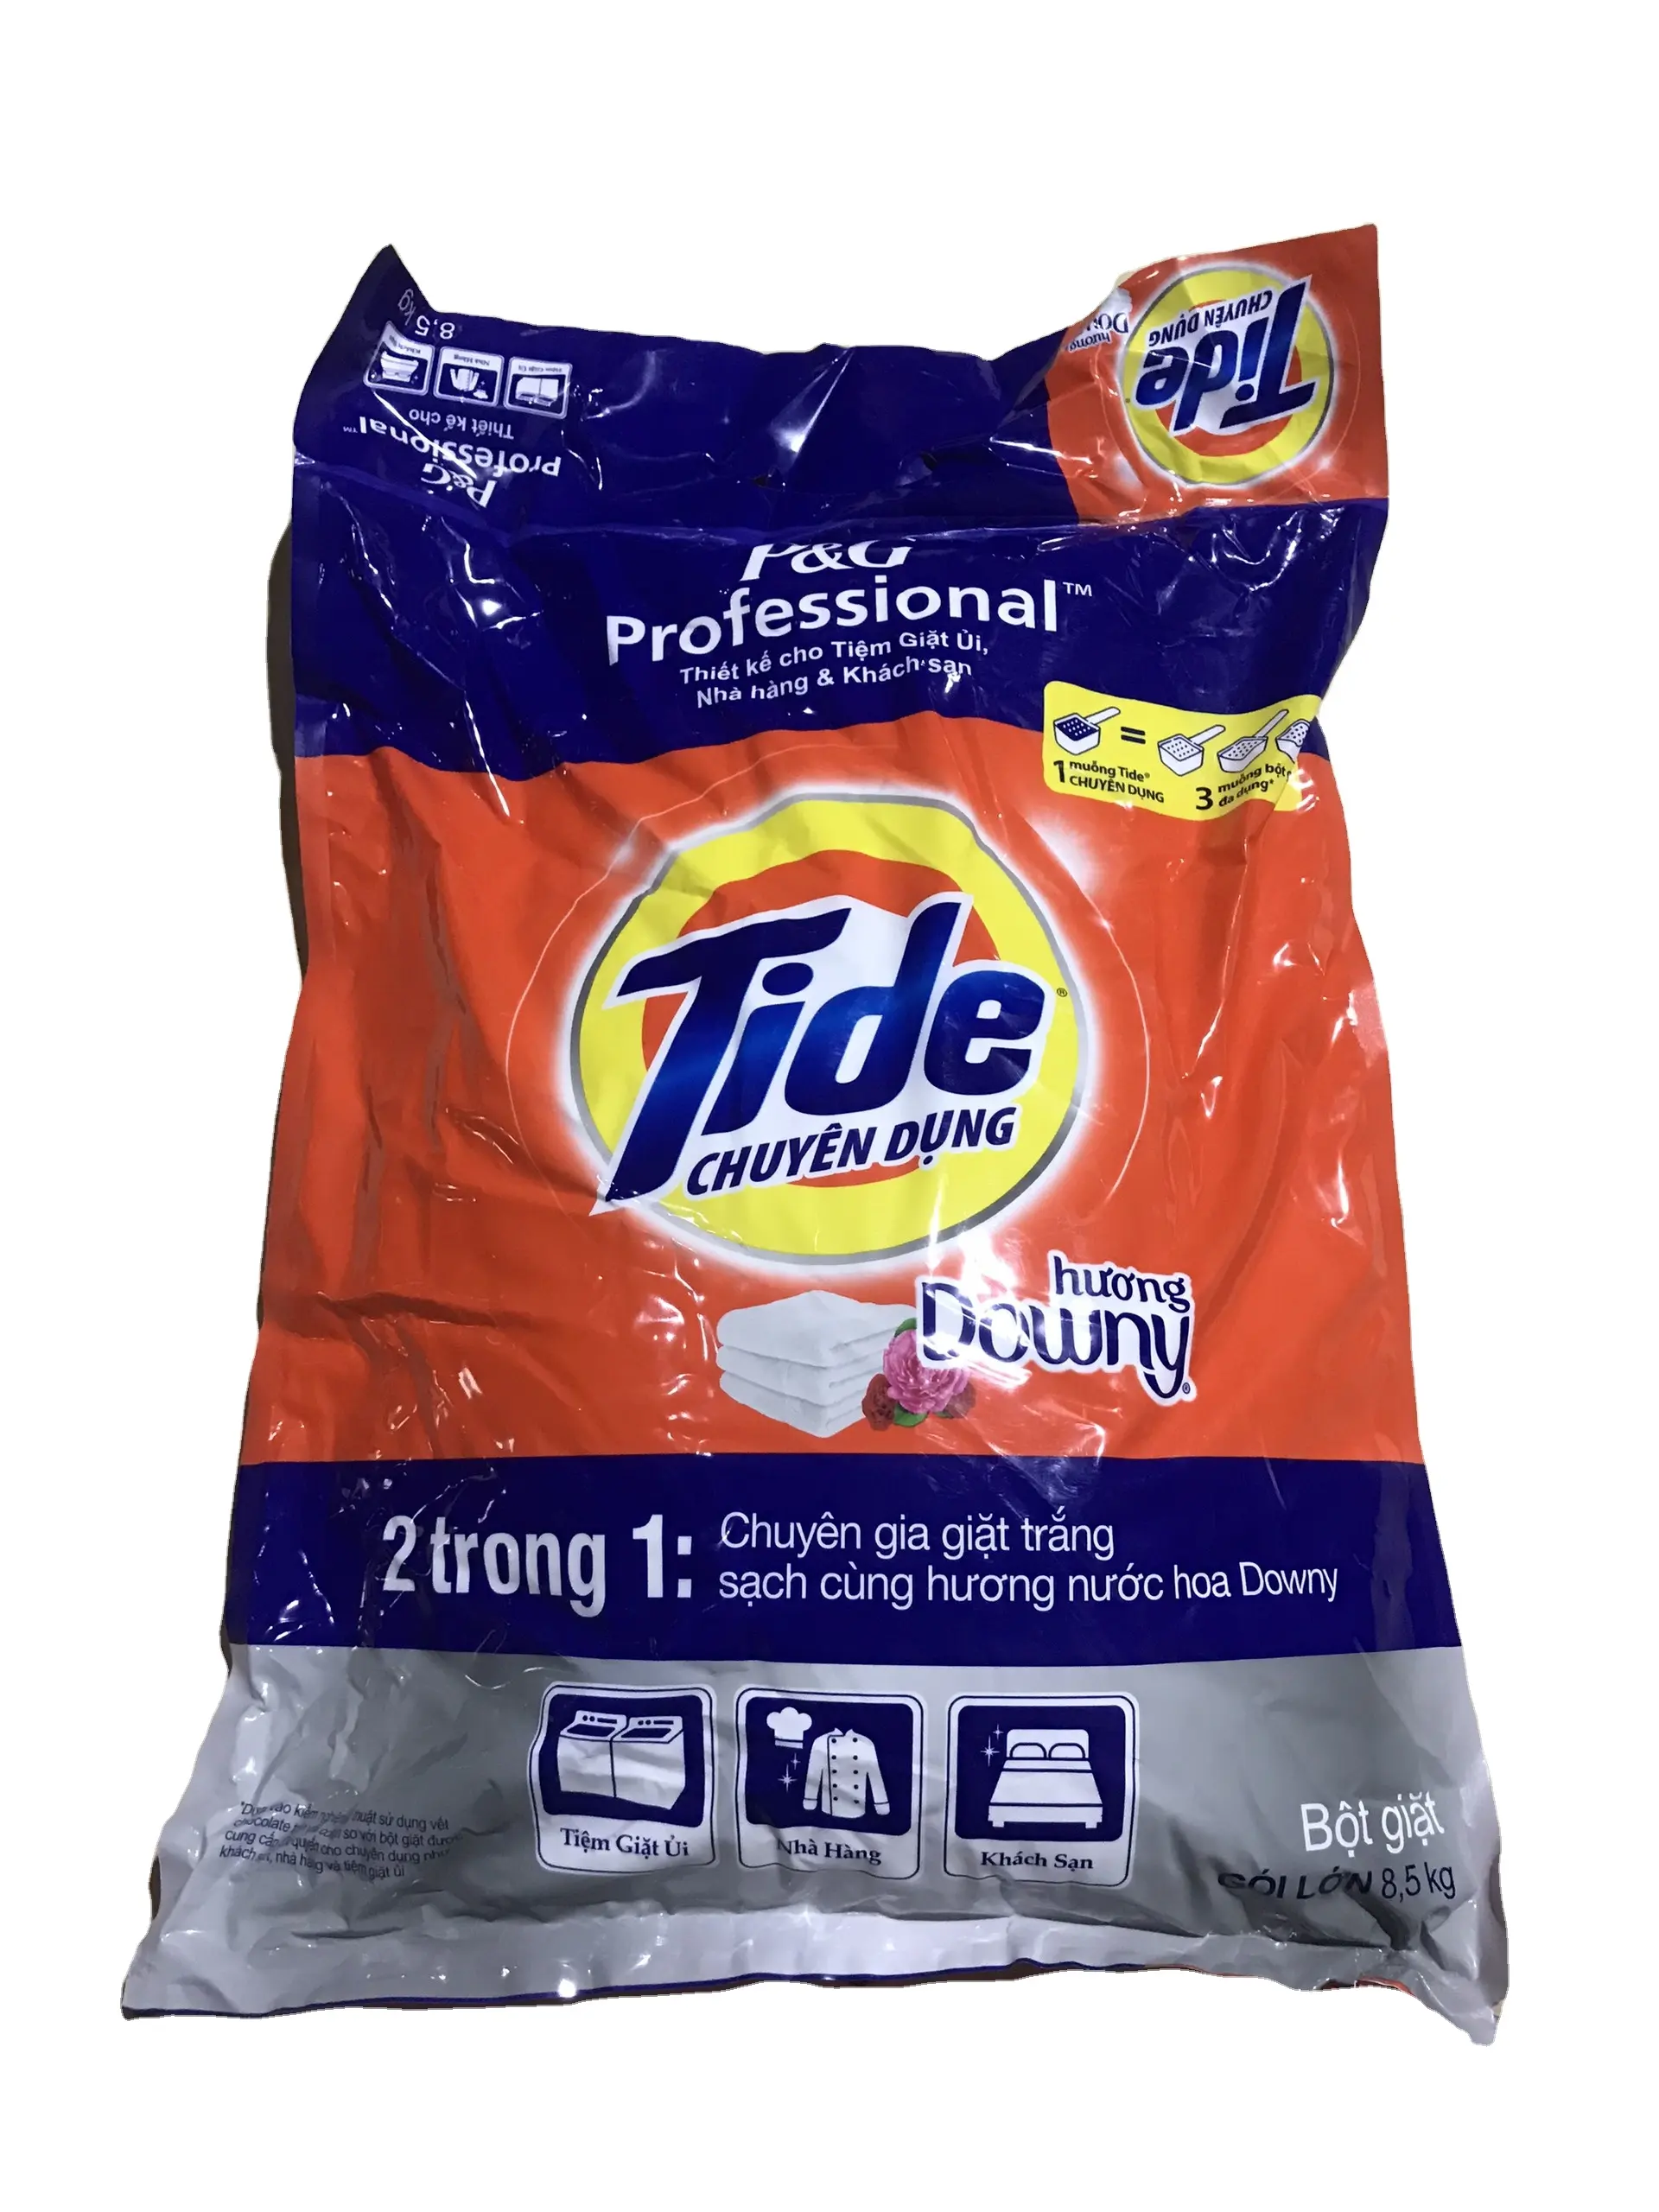 مسحوق تنظيف سوبر وايت داوني من Tide سعة 8.5 كجم للبيع بالجملة مزود بمادة تنظيف جوهرية وجديدة صناعة فيتنام